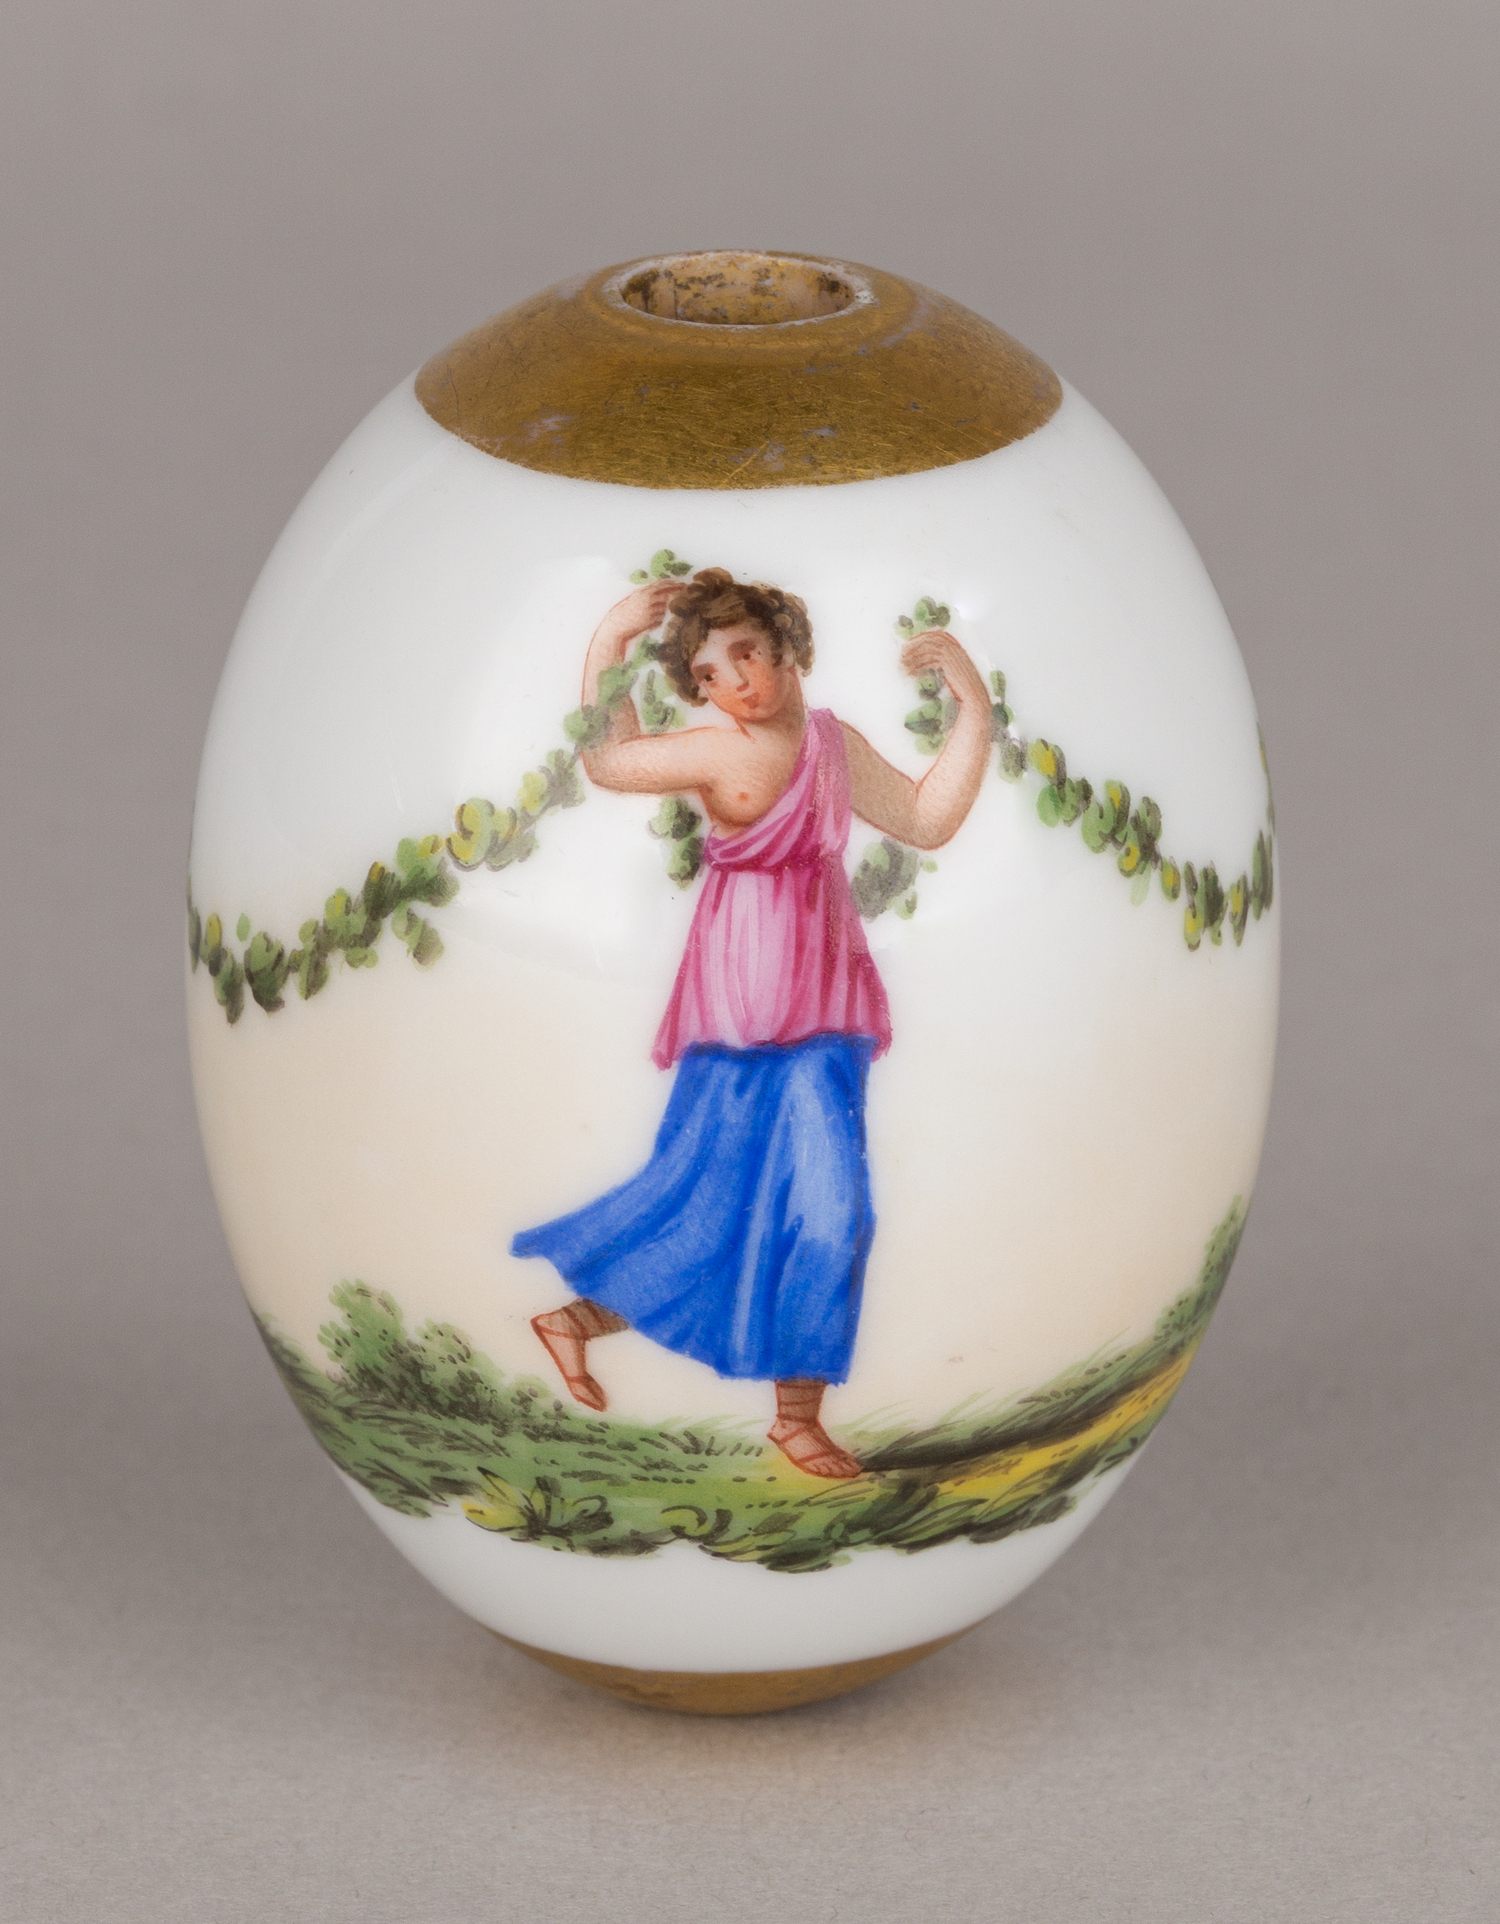 (Пасхальные дары) Яйцо пасхальное с античным декором. Россия, первая четверть XIX века.